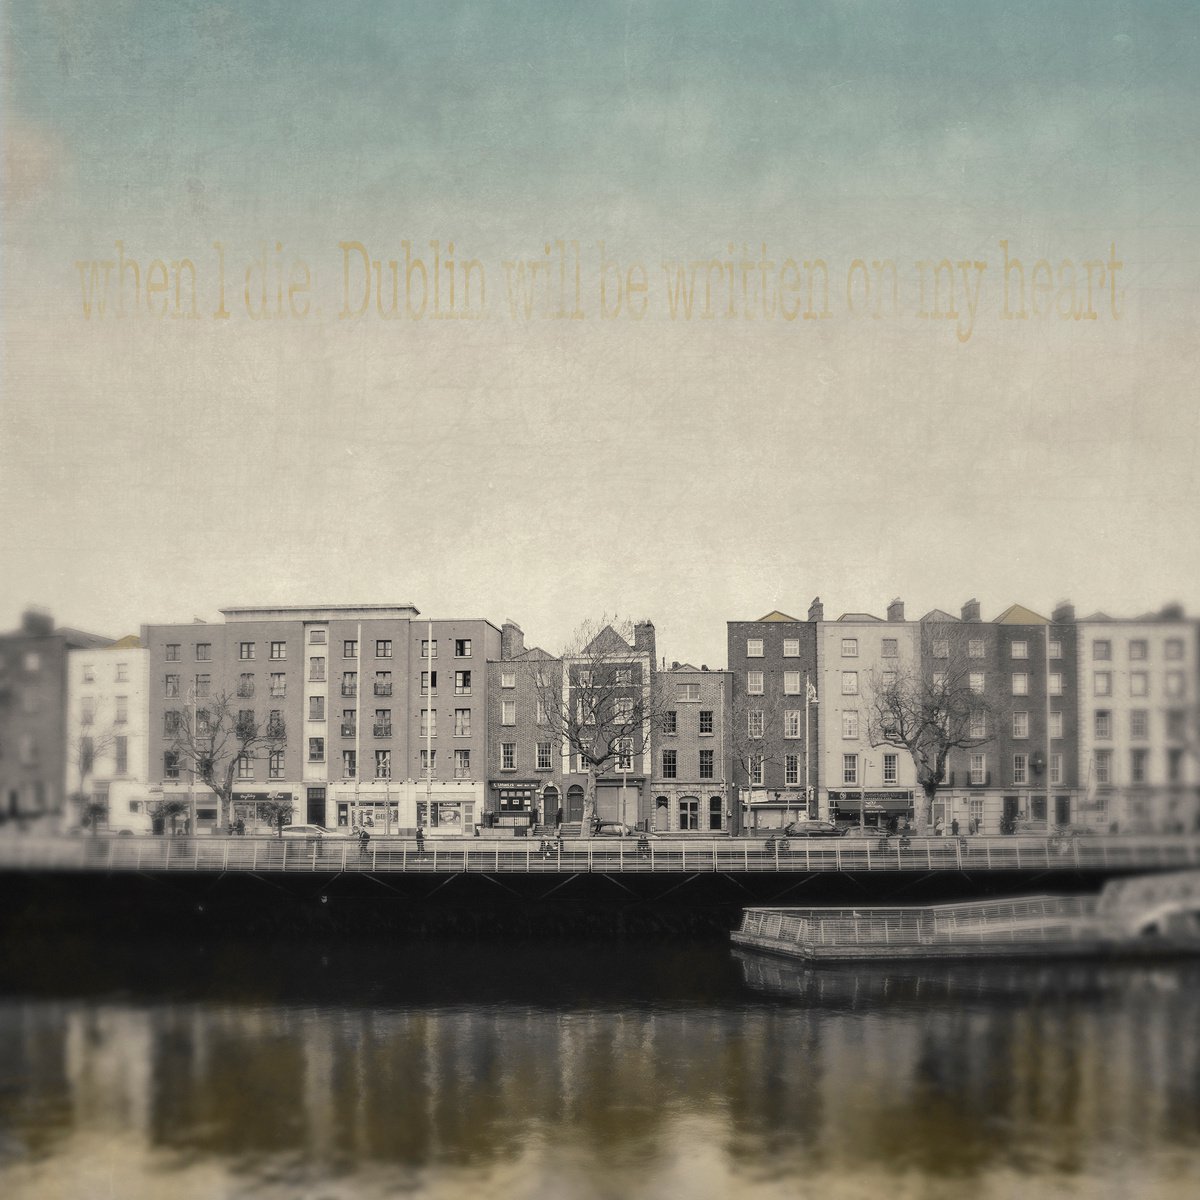 Dublin will be written in my heart by Louise O’Gorman